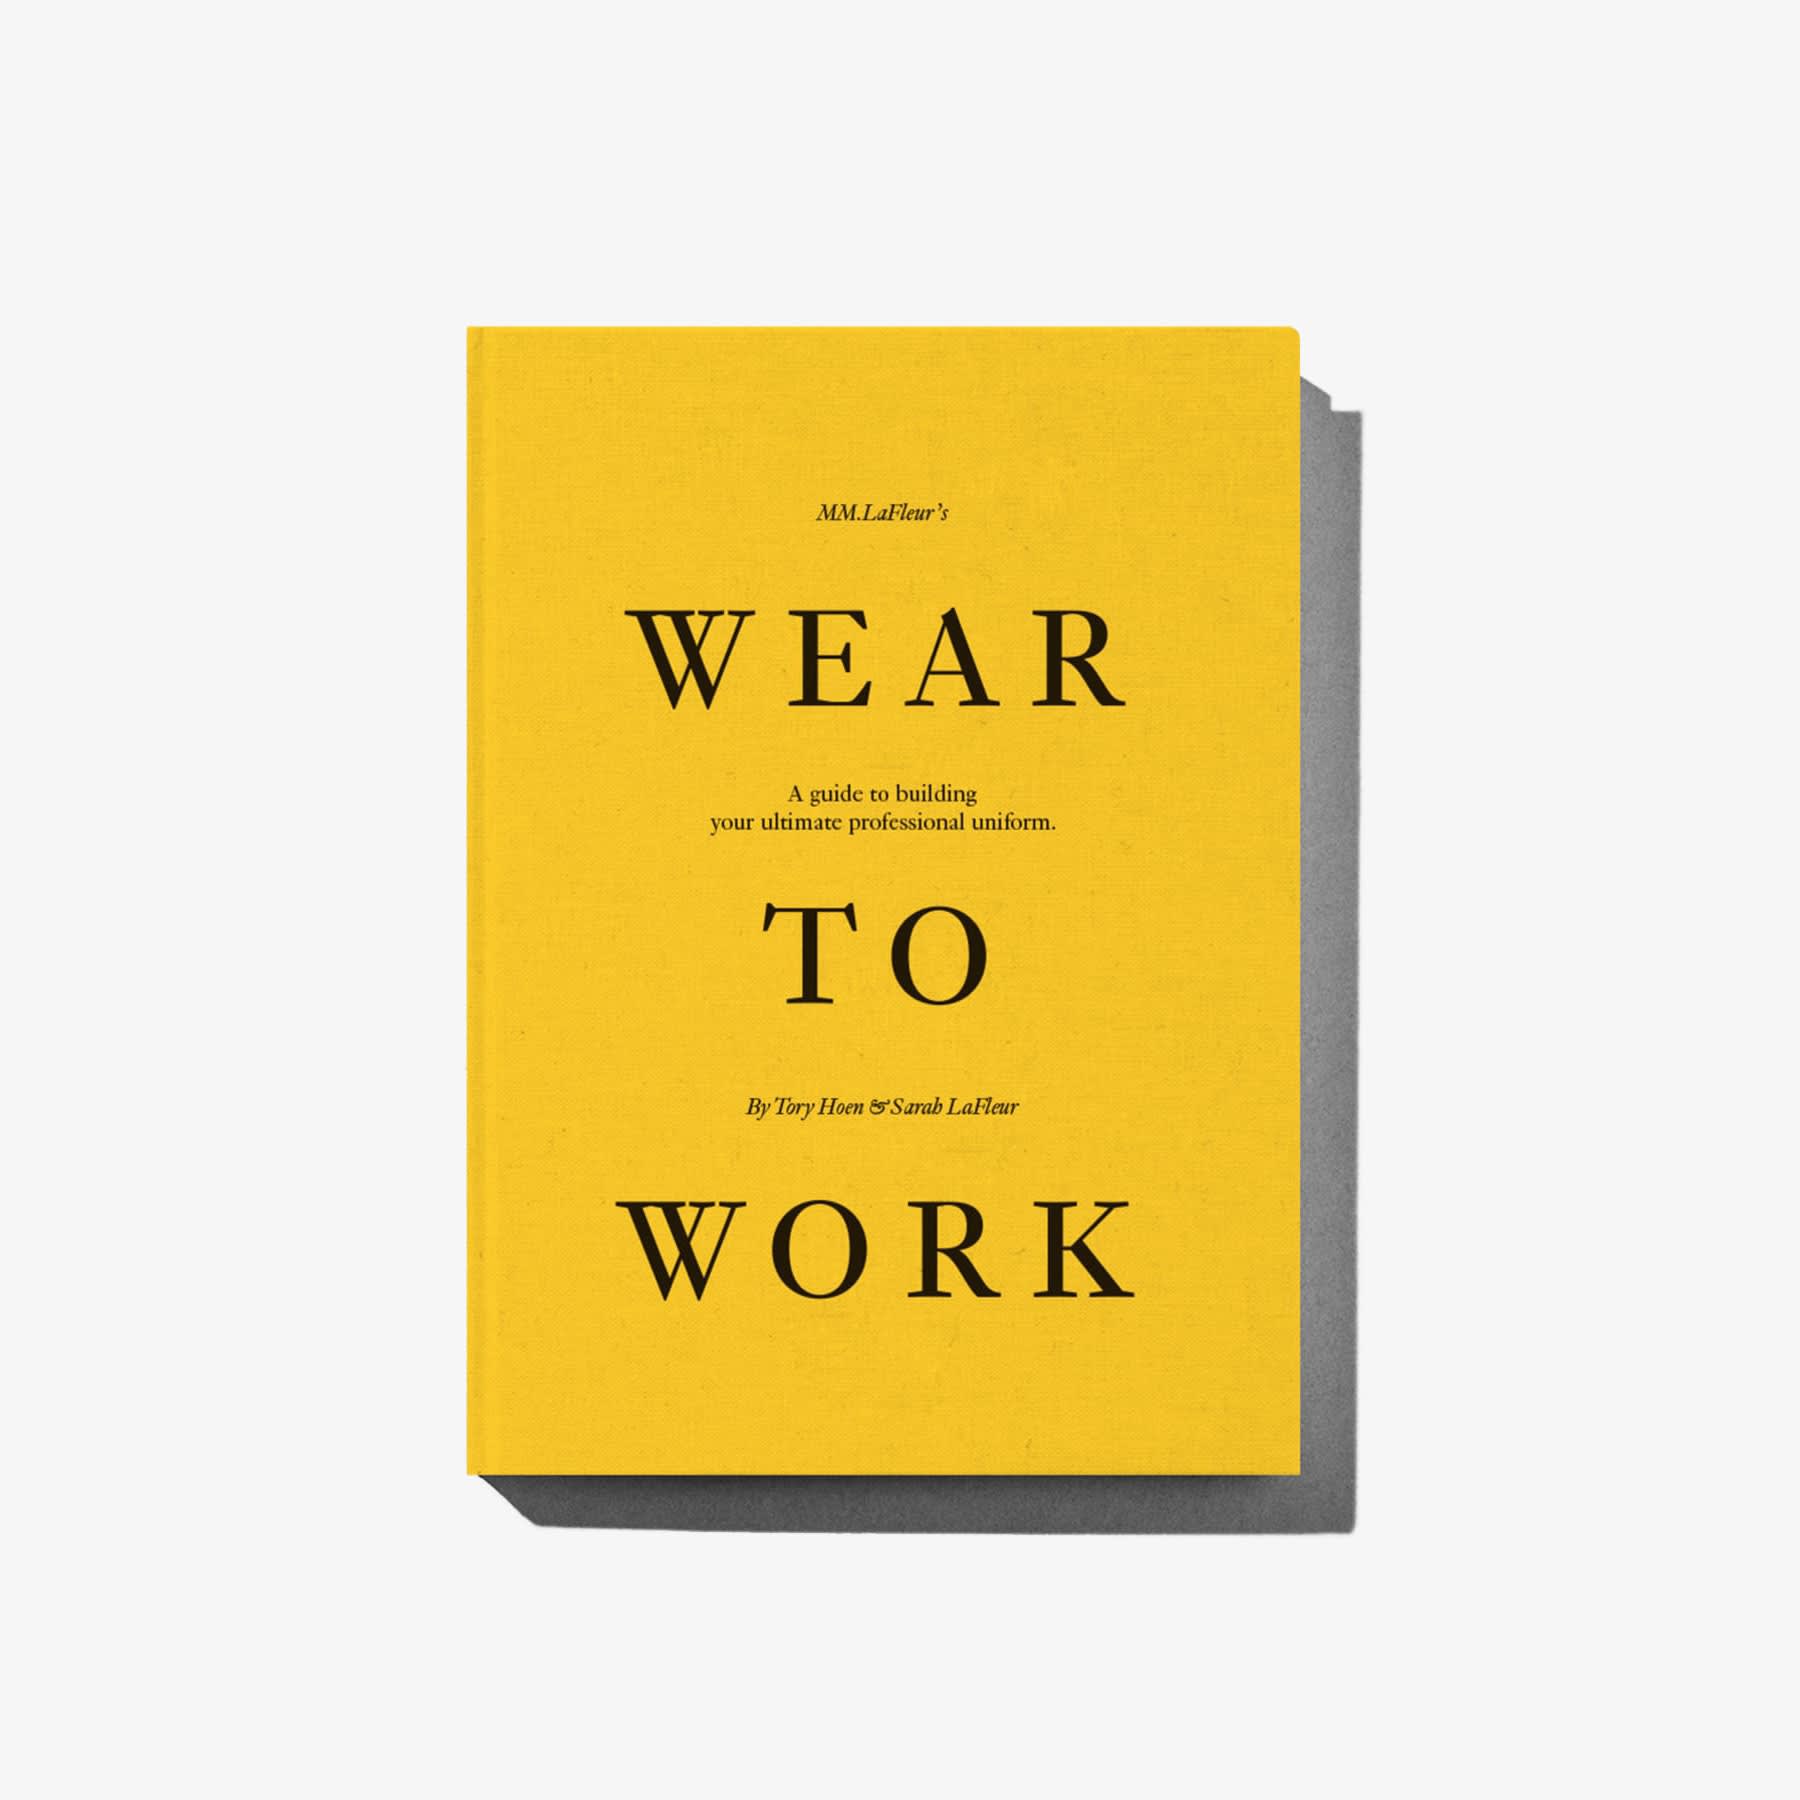 Wear to Work by M.M.LaFleur